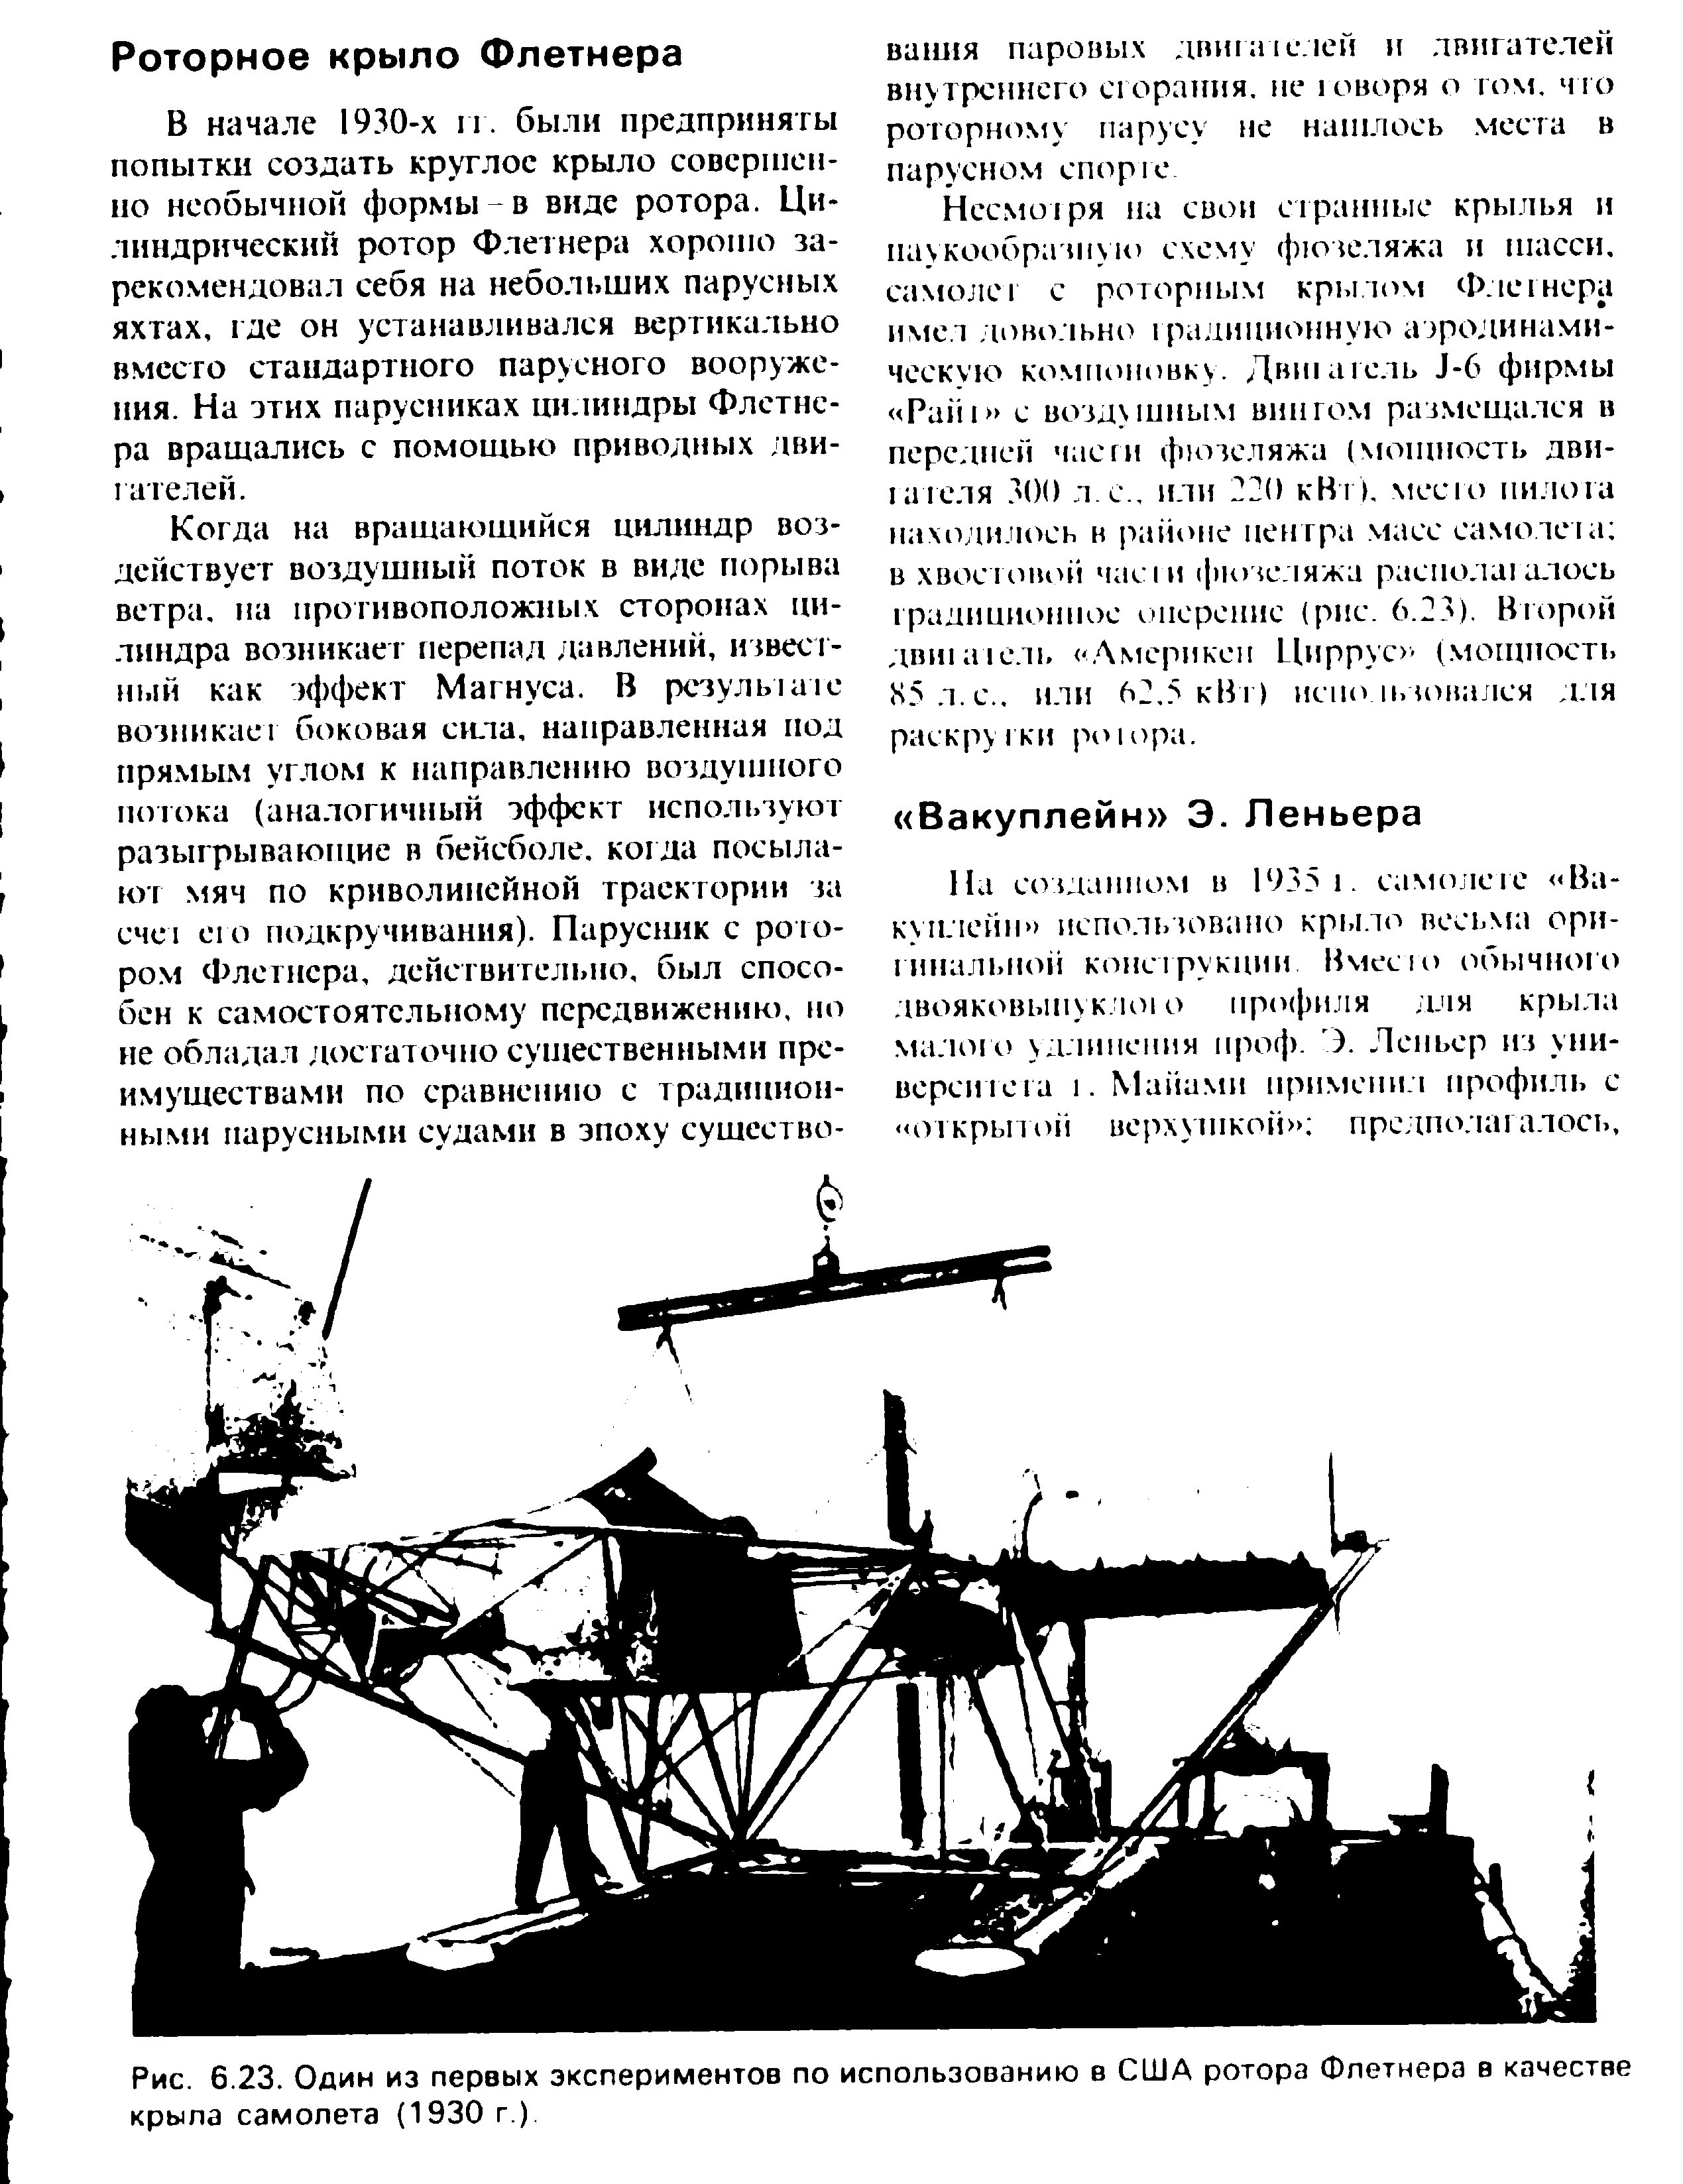 Рис. 6.23. Один из первых экспериментов по использованию в США ротора Флетнера в качестве крыла самолета (1930 г.)
